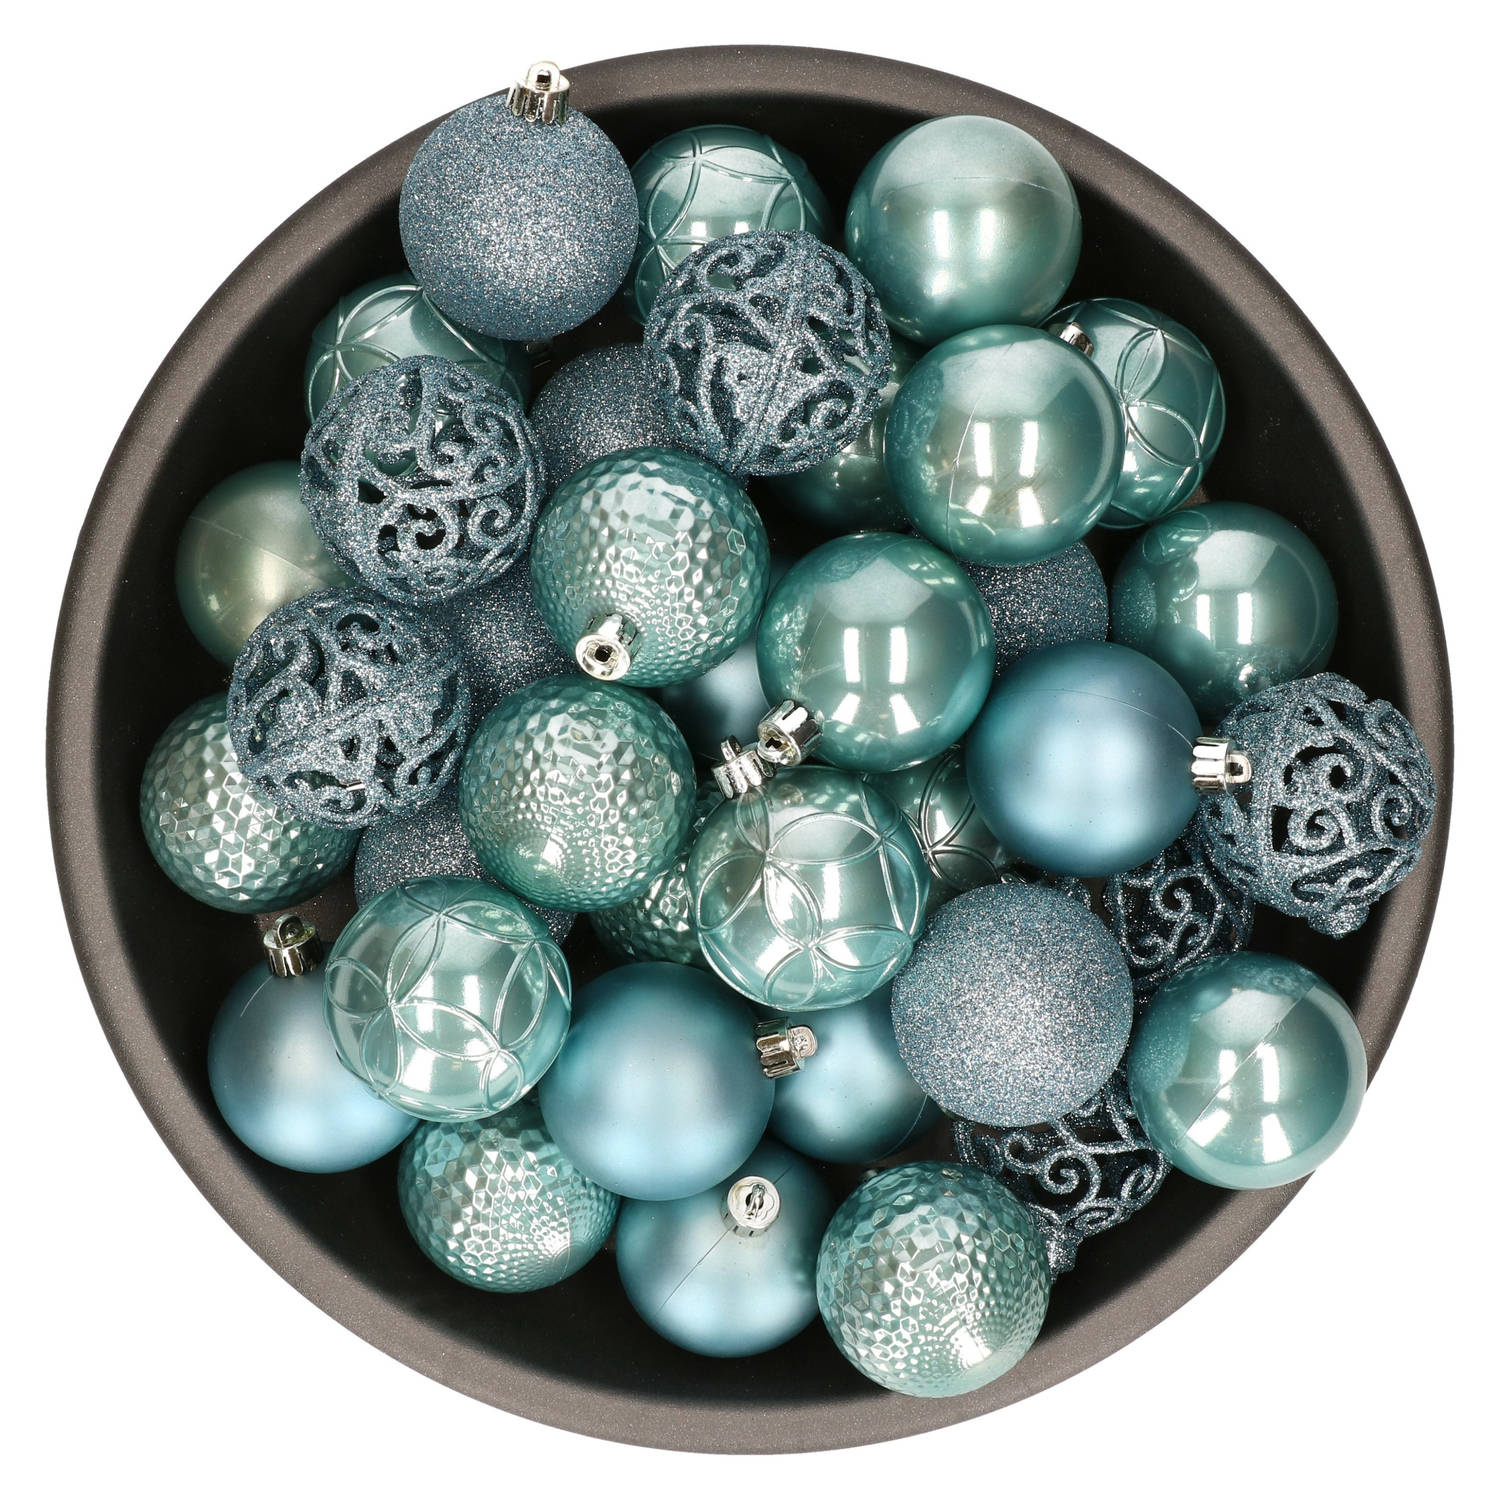 37x Stuks Kunststof Kerstballen Ijsblauw (Arctic Blue) 6 Cm Glans-mat-glitter Mix Kerstbal